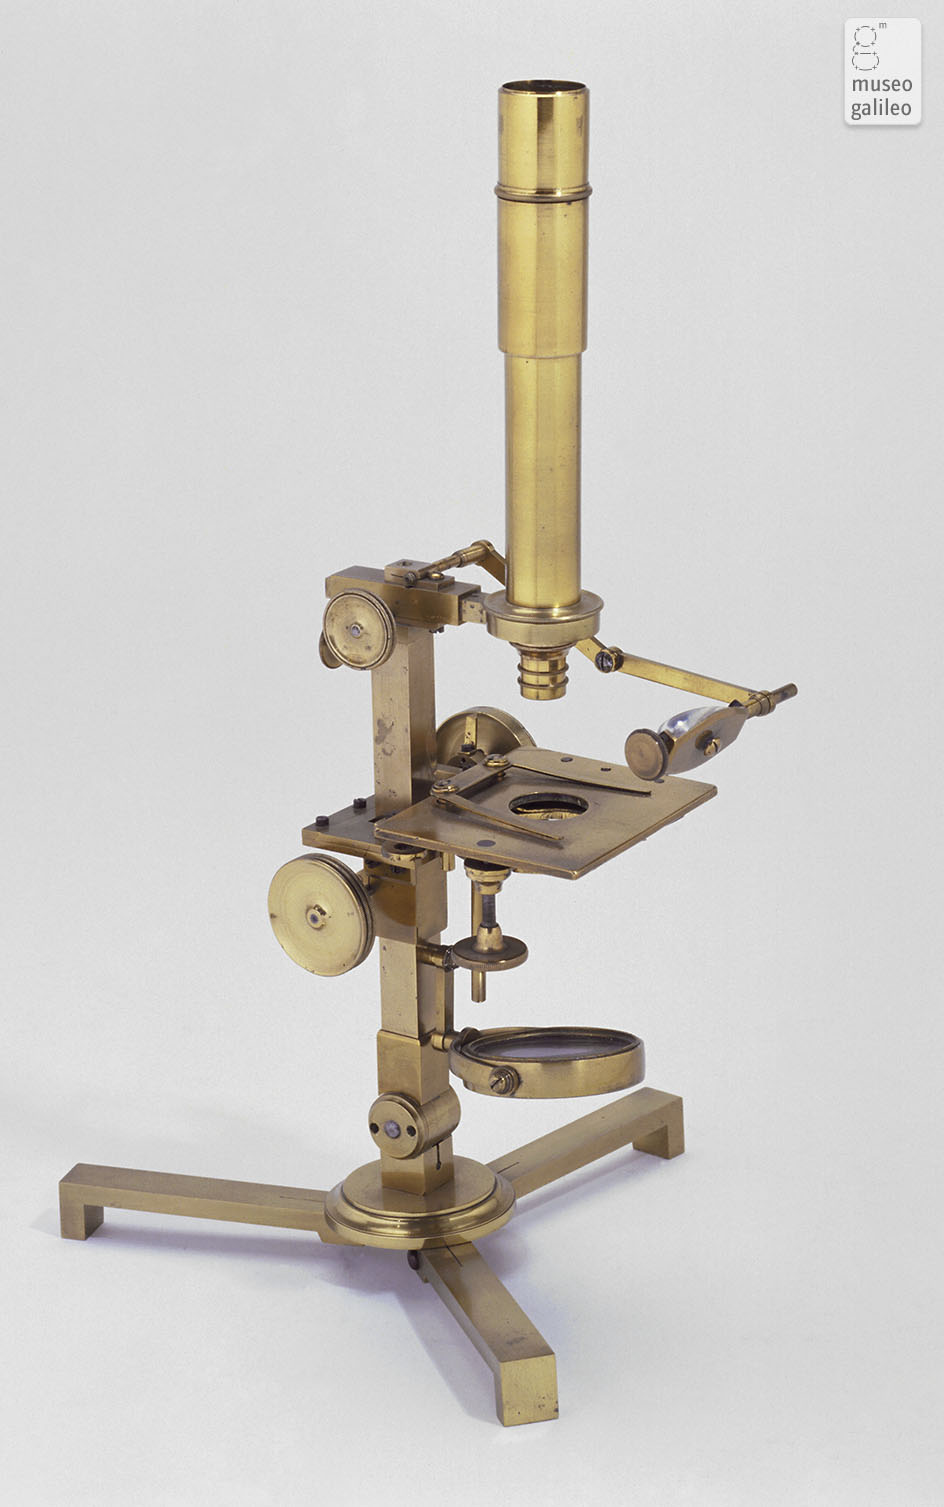 Compound microscope (Inv. 3385)